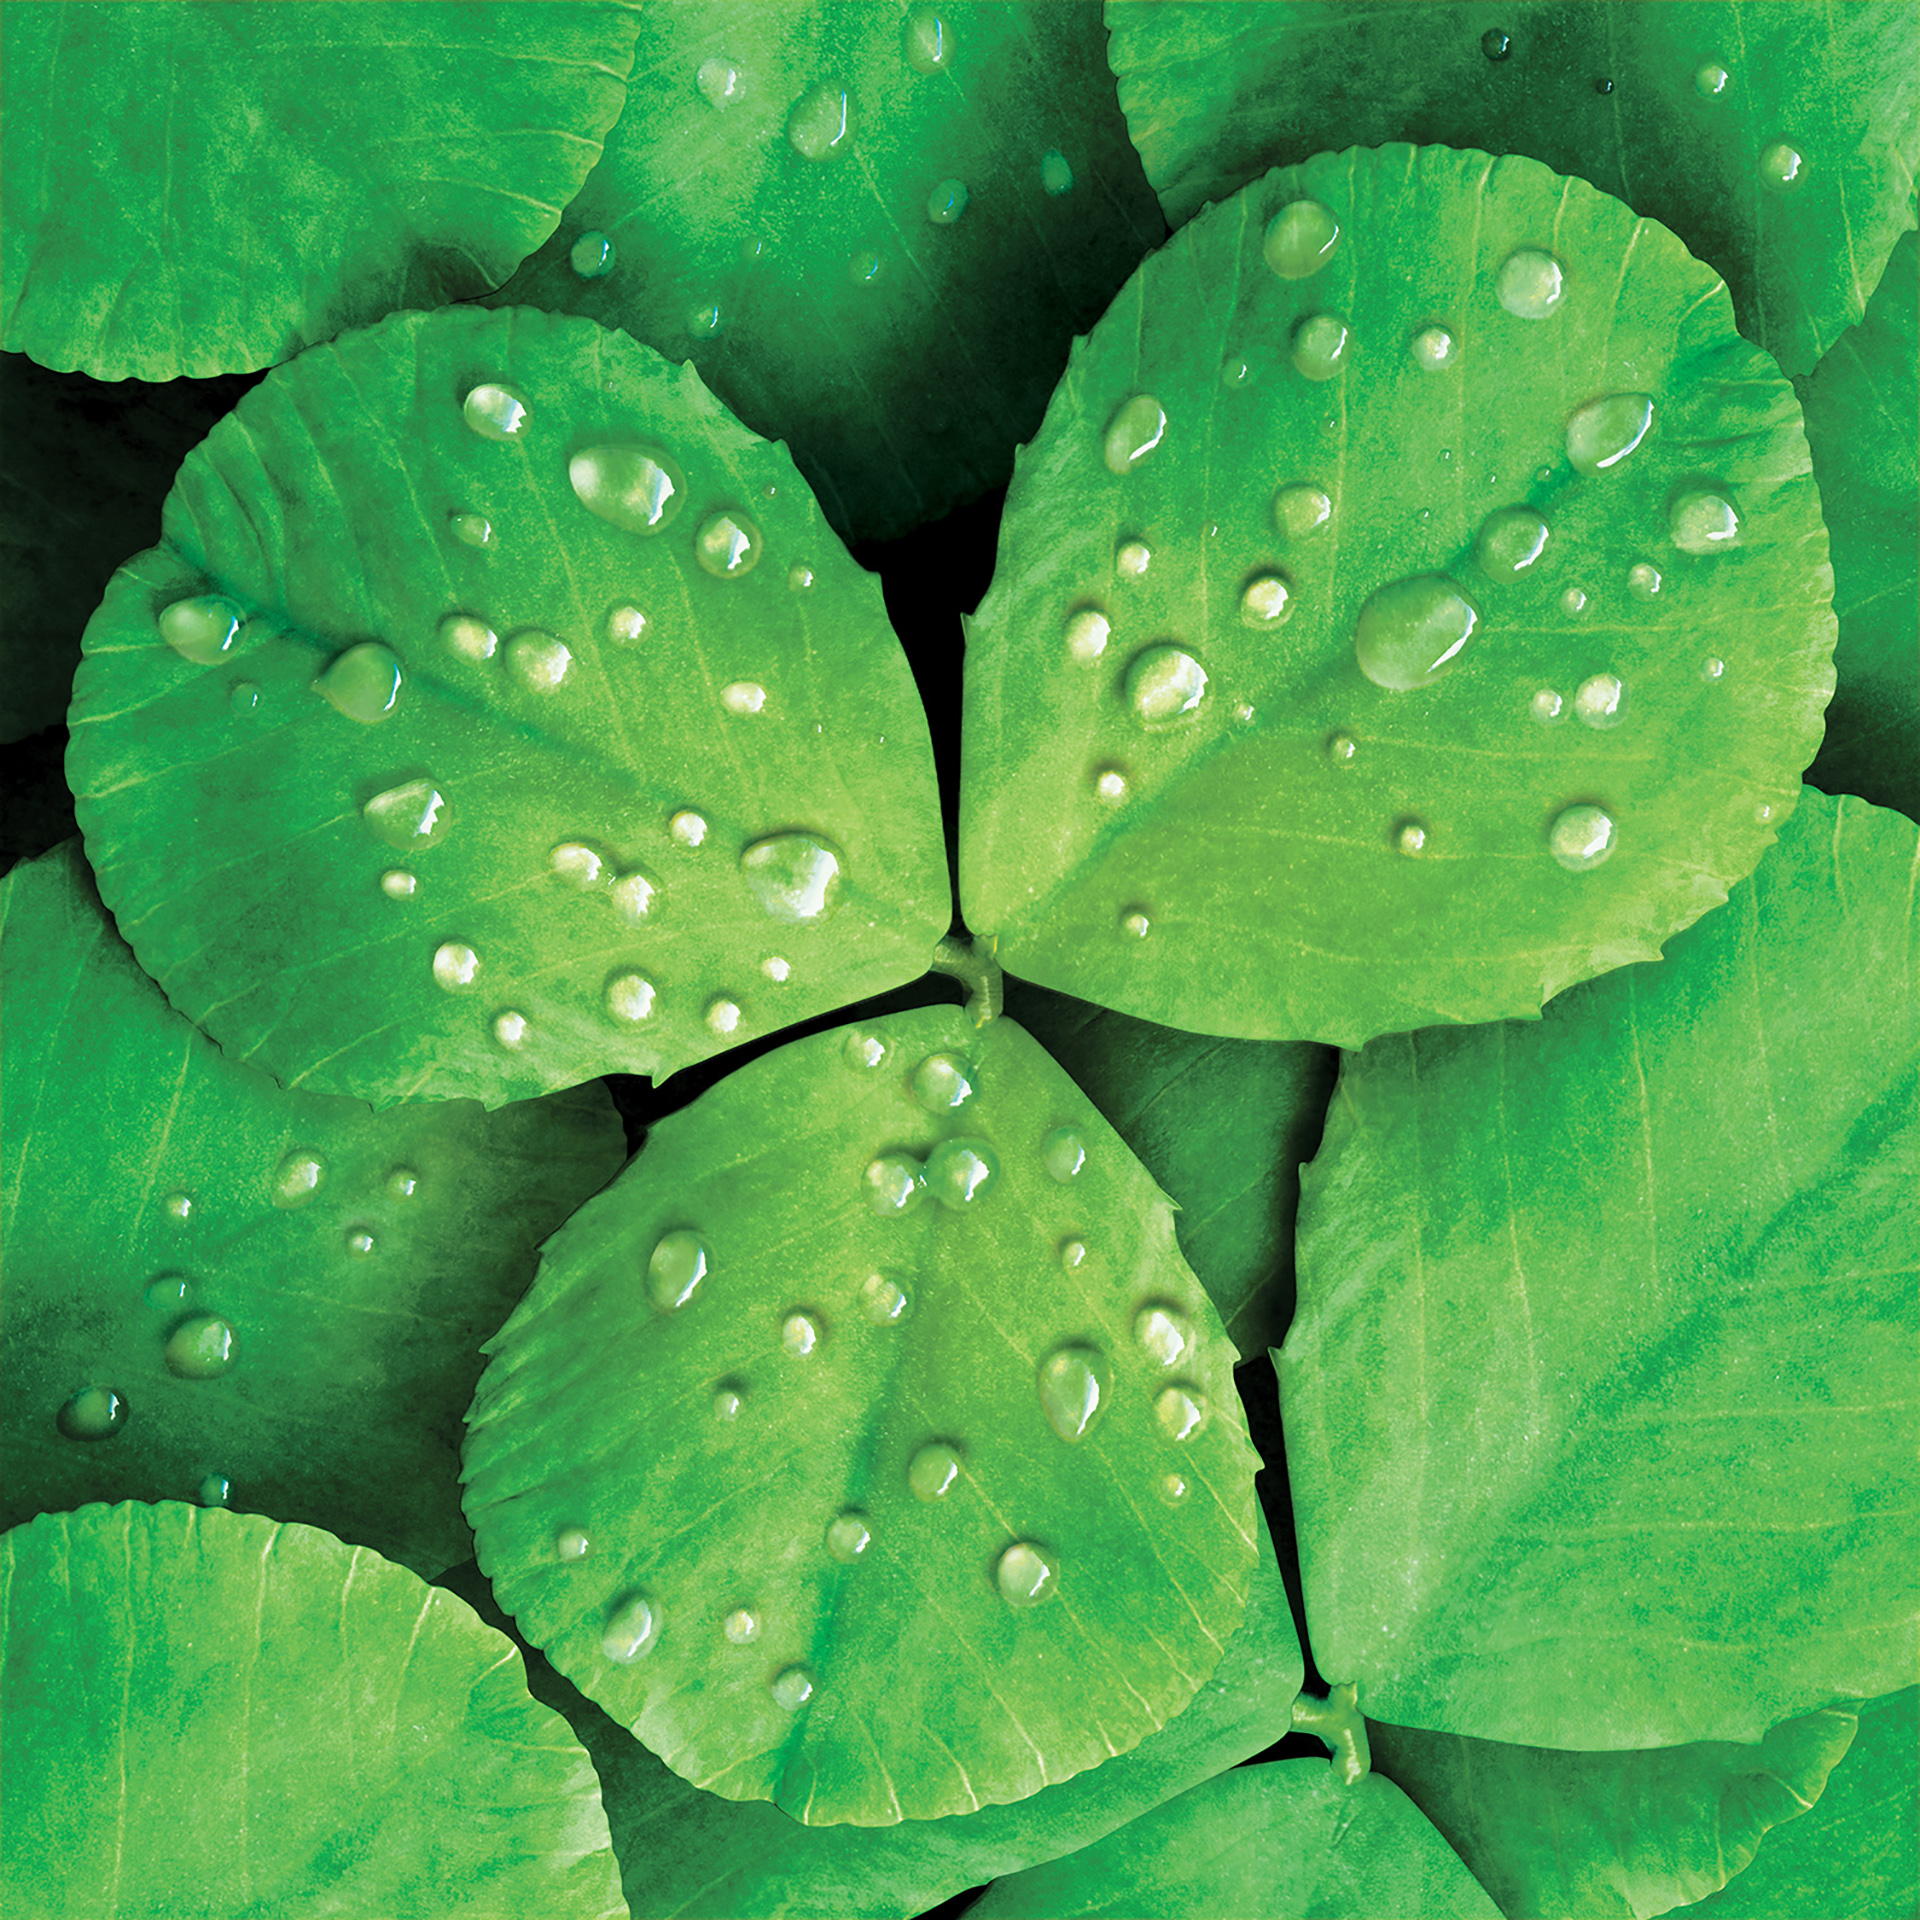 3D liquid illustration aloe vera leaves with droplets